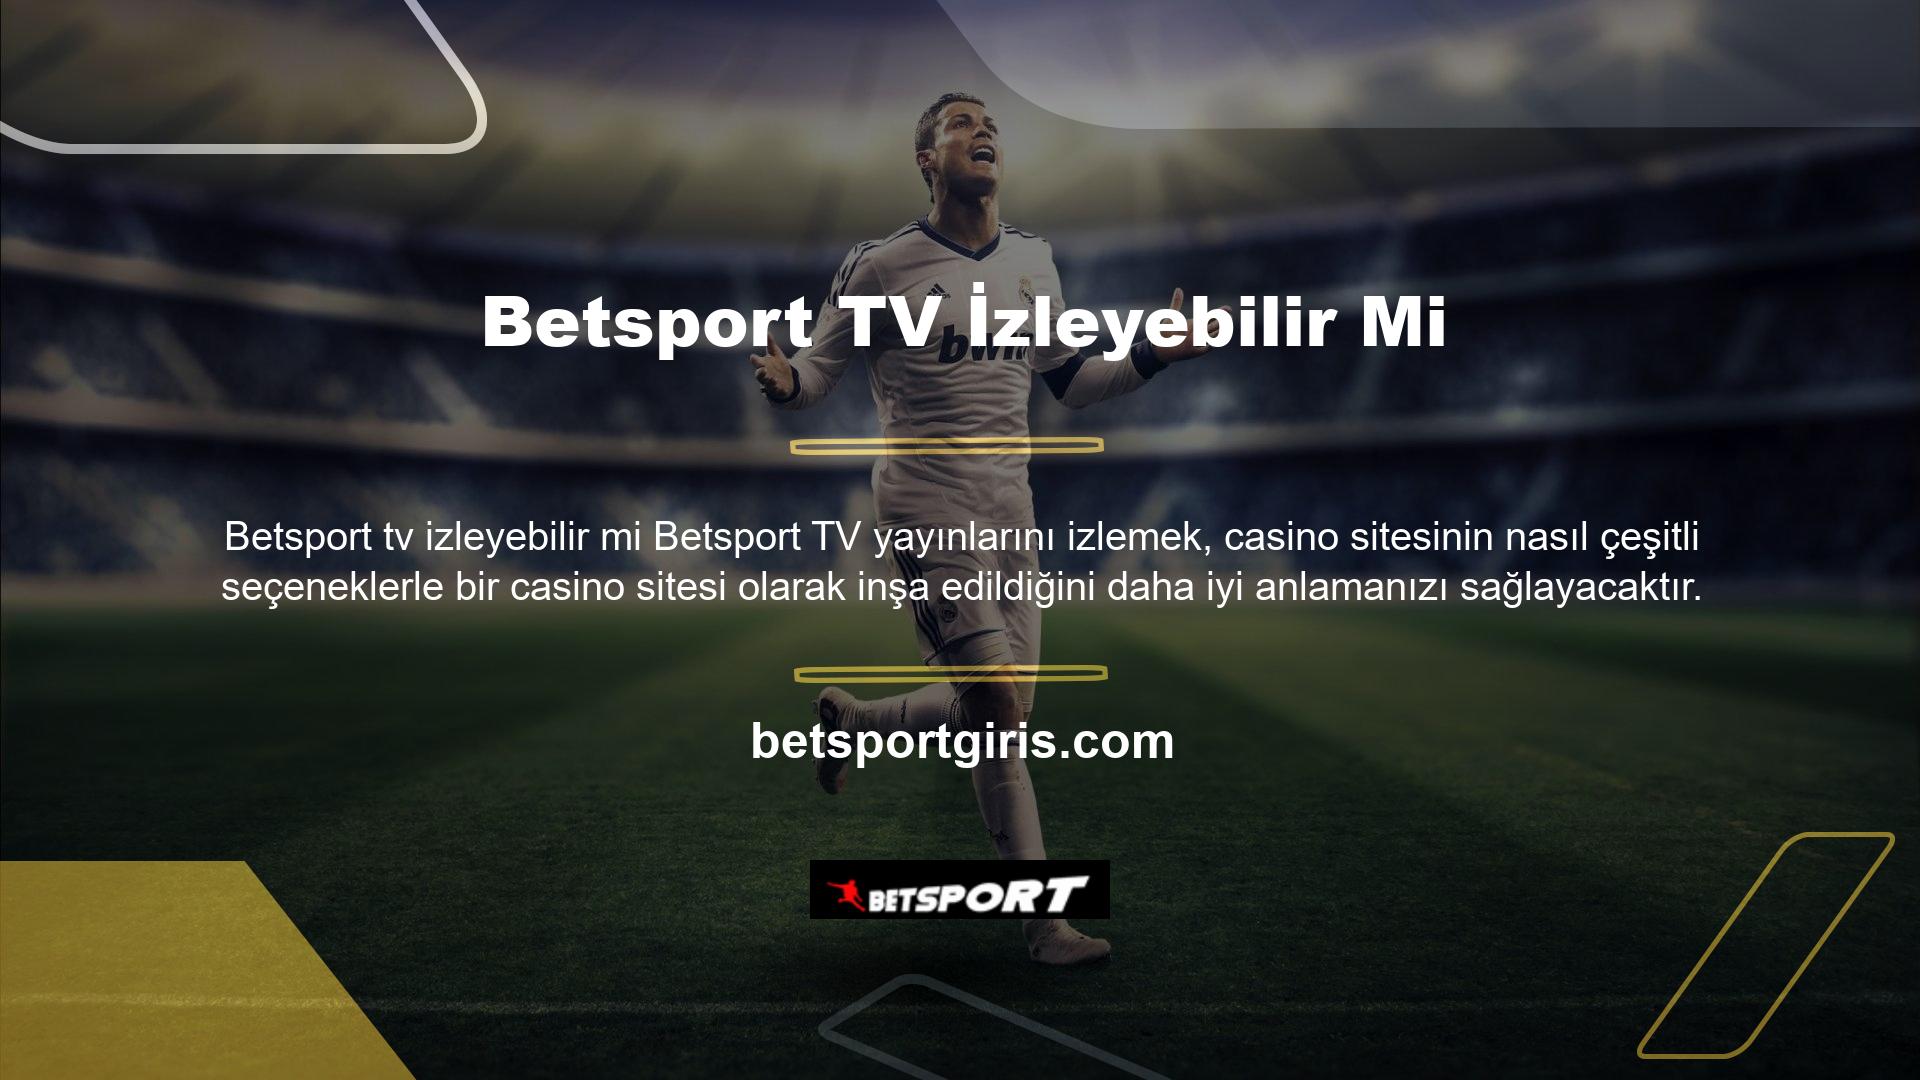 Lig TV, beIN Sports, Tivibu, D-Smart ve 7/24 Canlı Maçlardan canlı maçları ve özellikleri izleyin